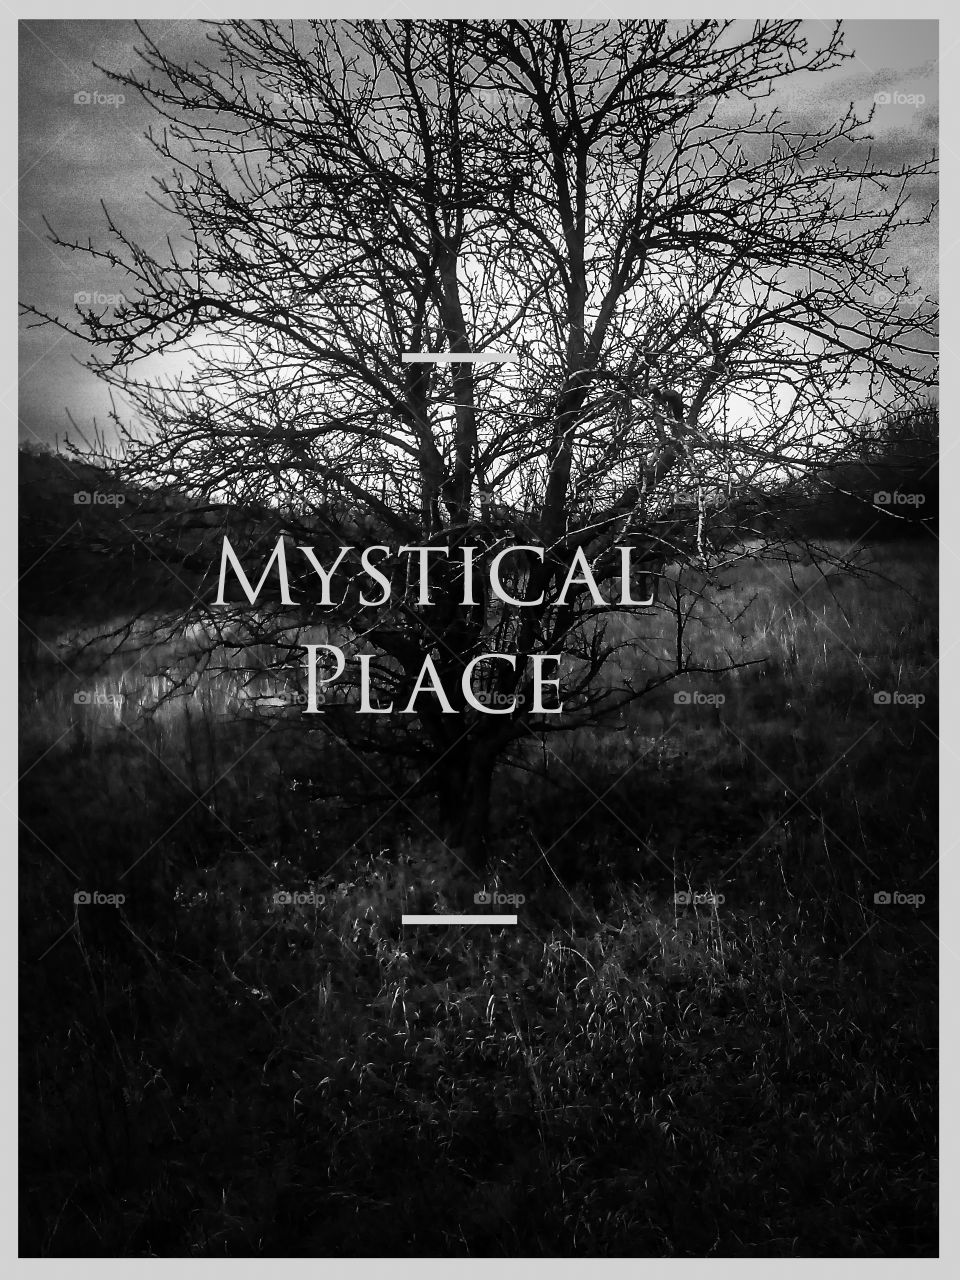 Mystical place